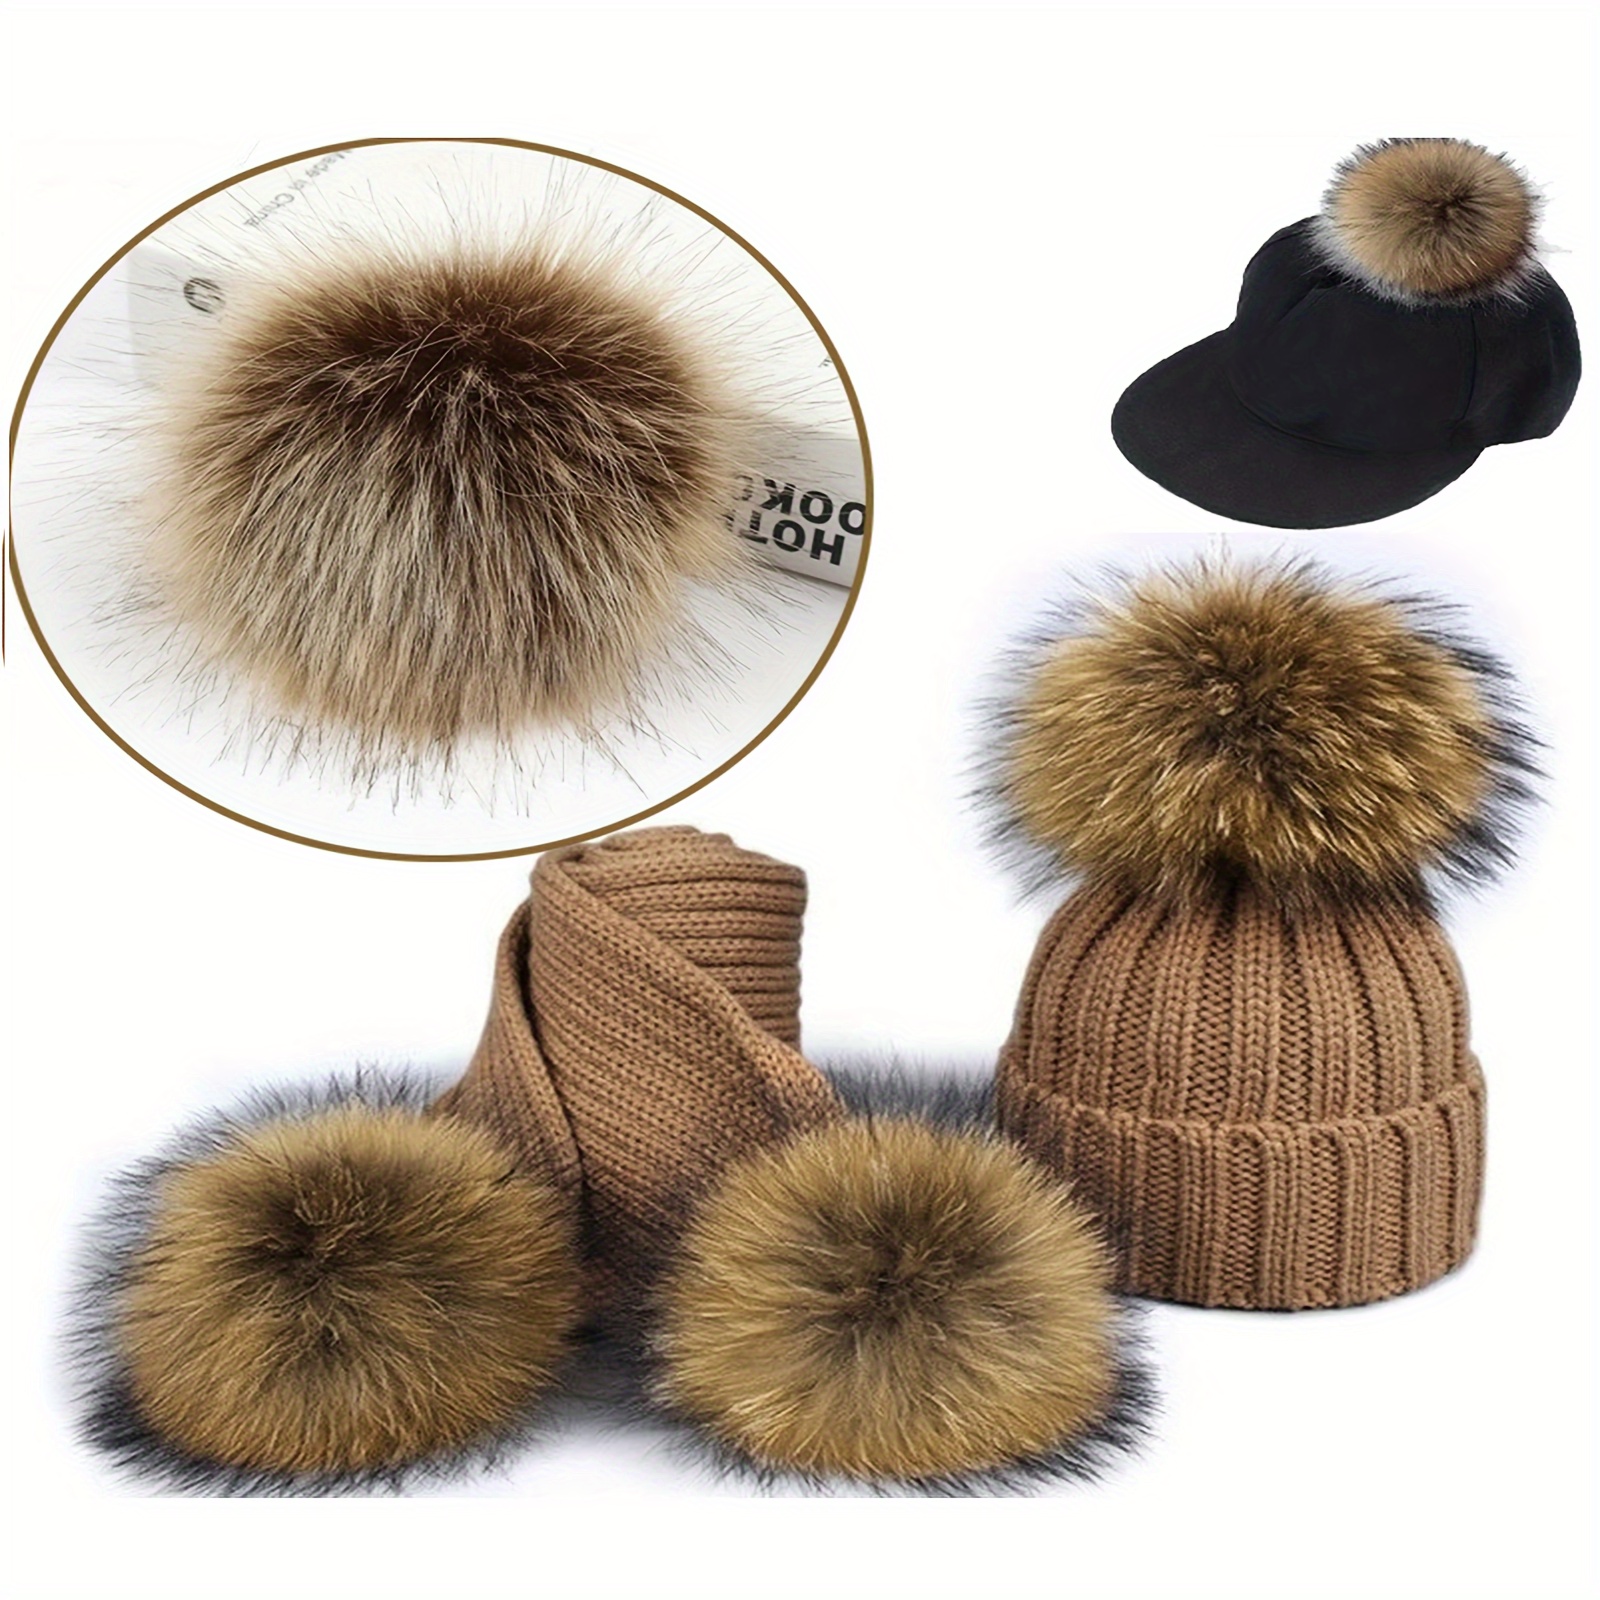 

12pcs/set 3.94" Imitation Faux Fur Pom Poms For Beanies 3 Colors Diy Hat Accessories Beanie Decorations For Women Female